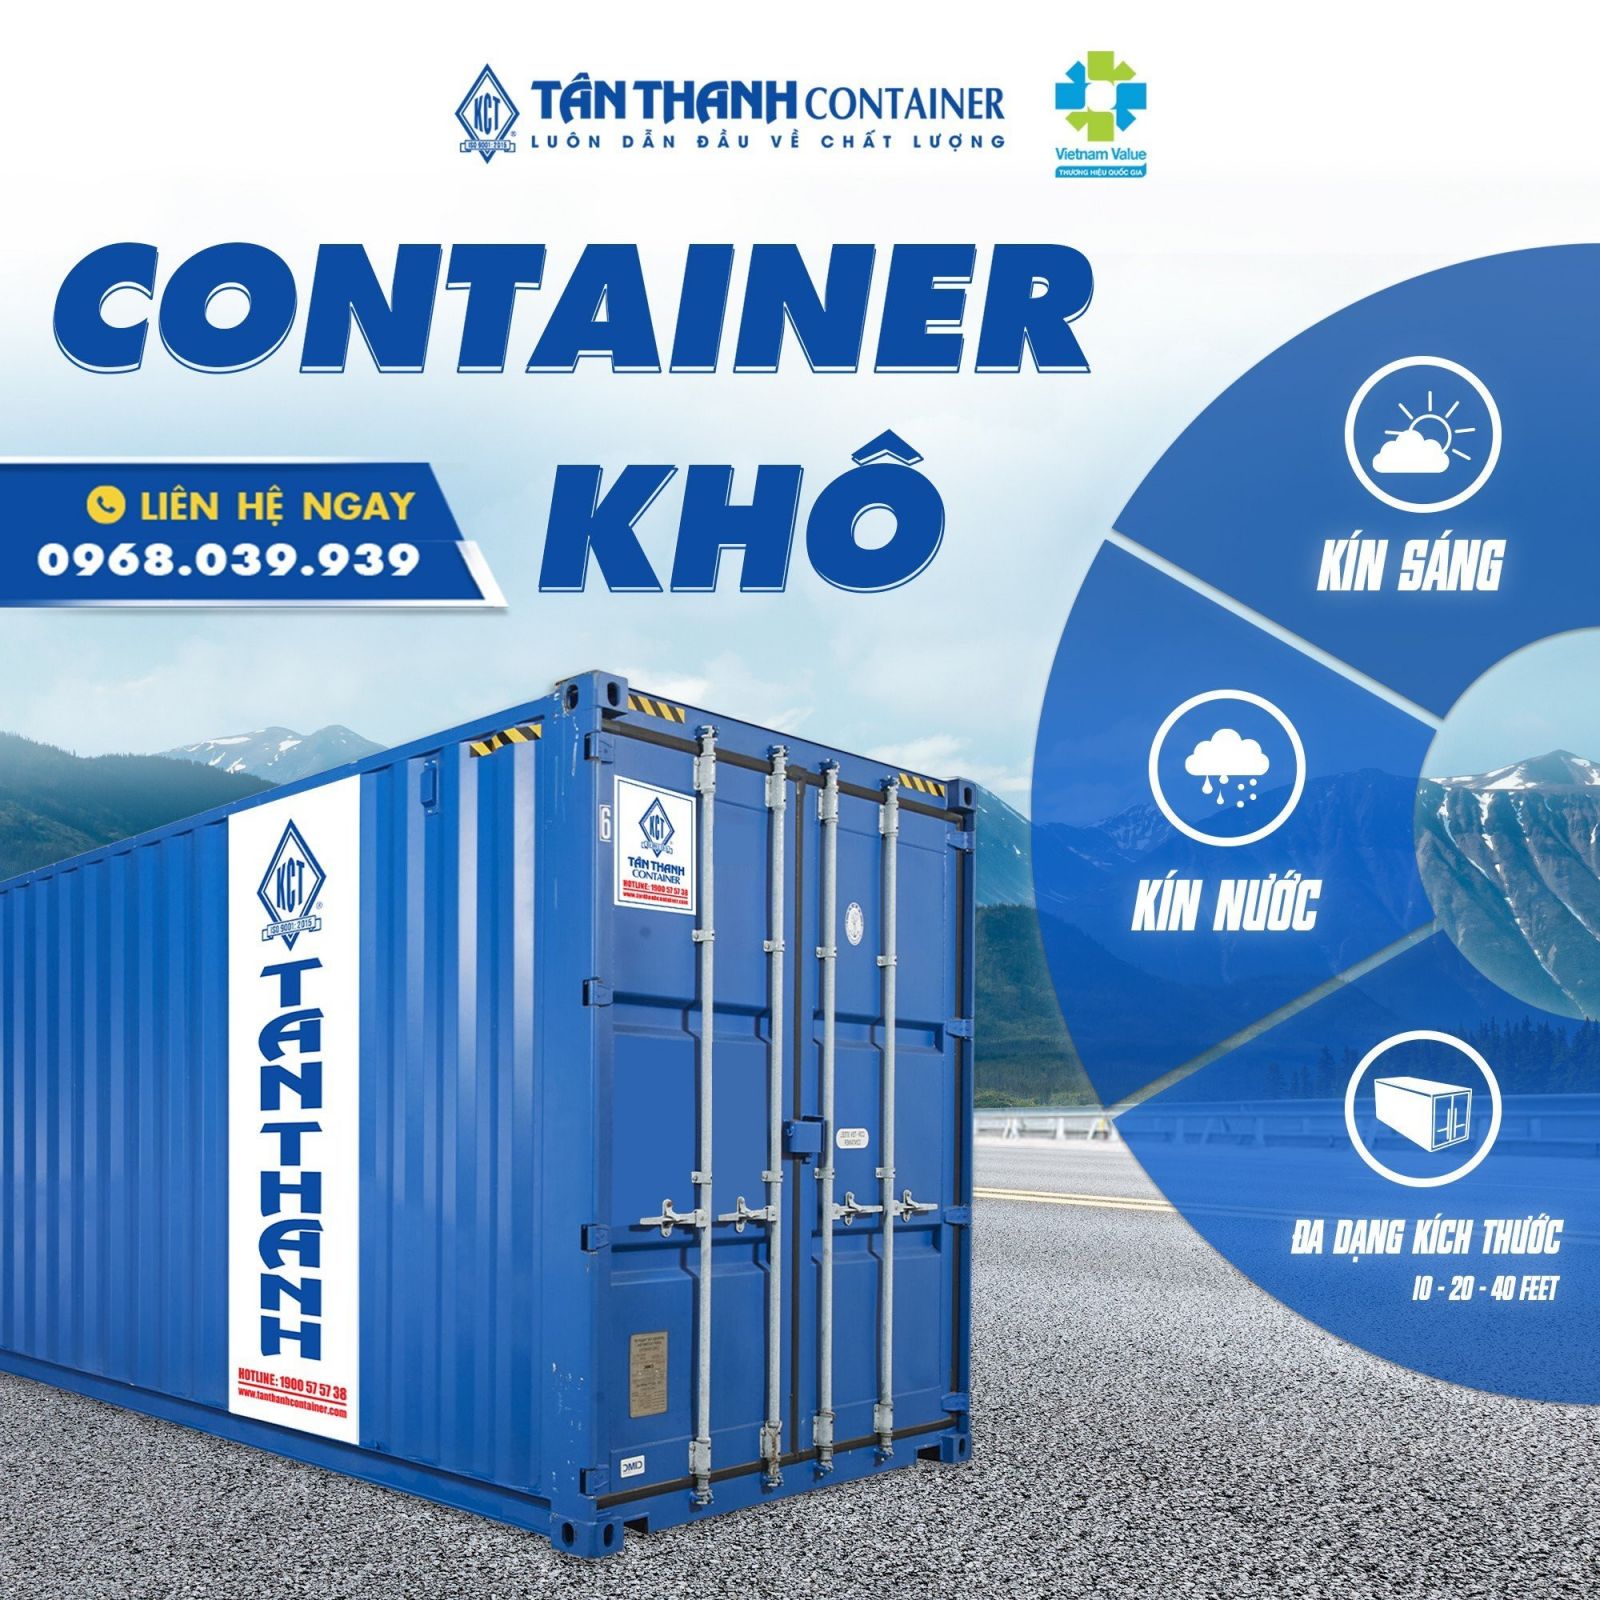 Bán và cho thuê container khô tại Tân Thanh Container